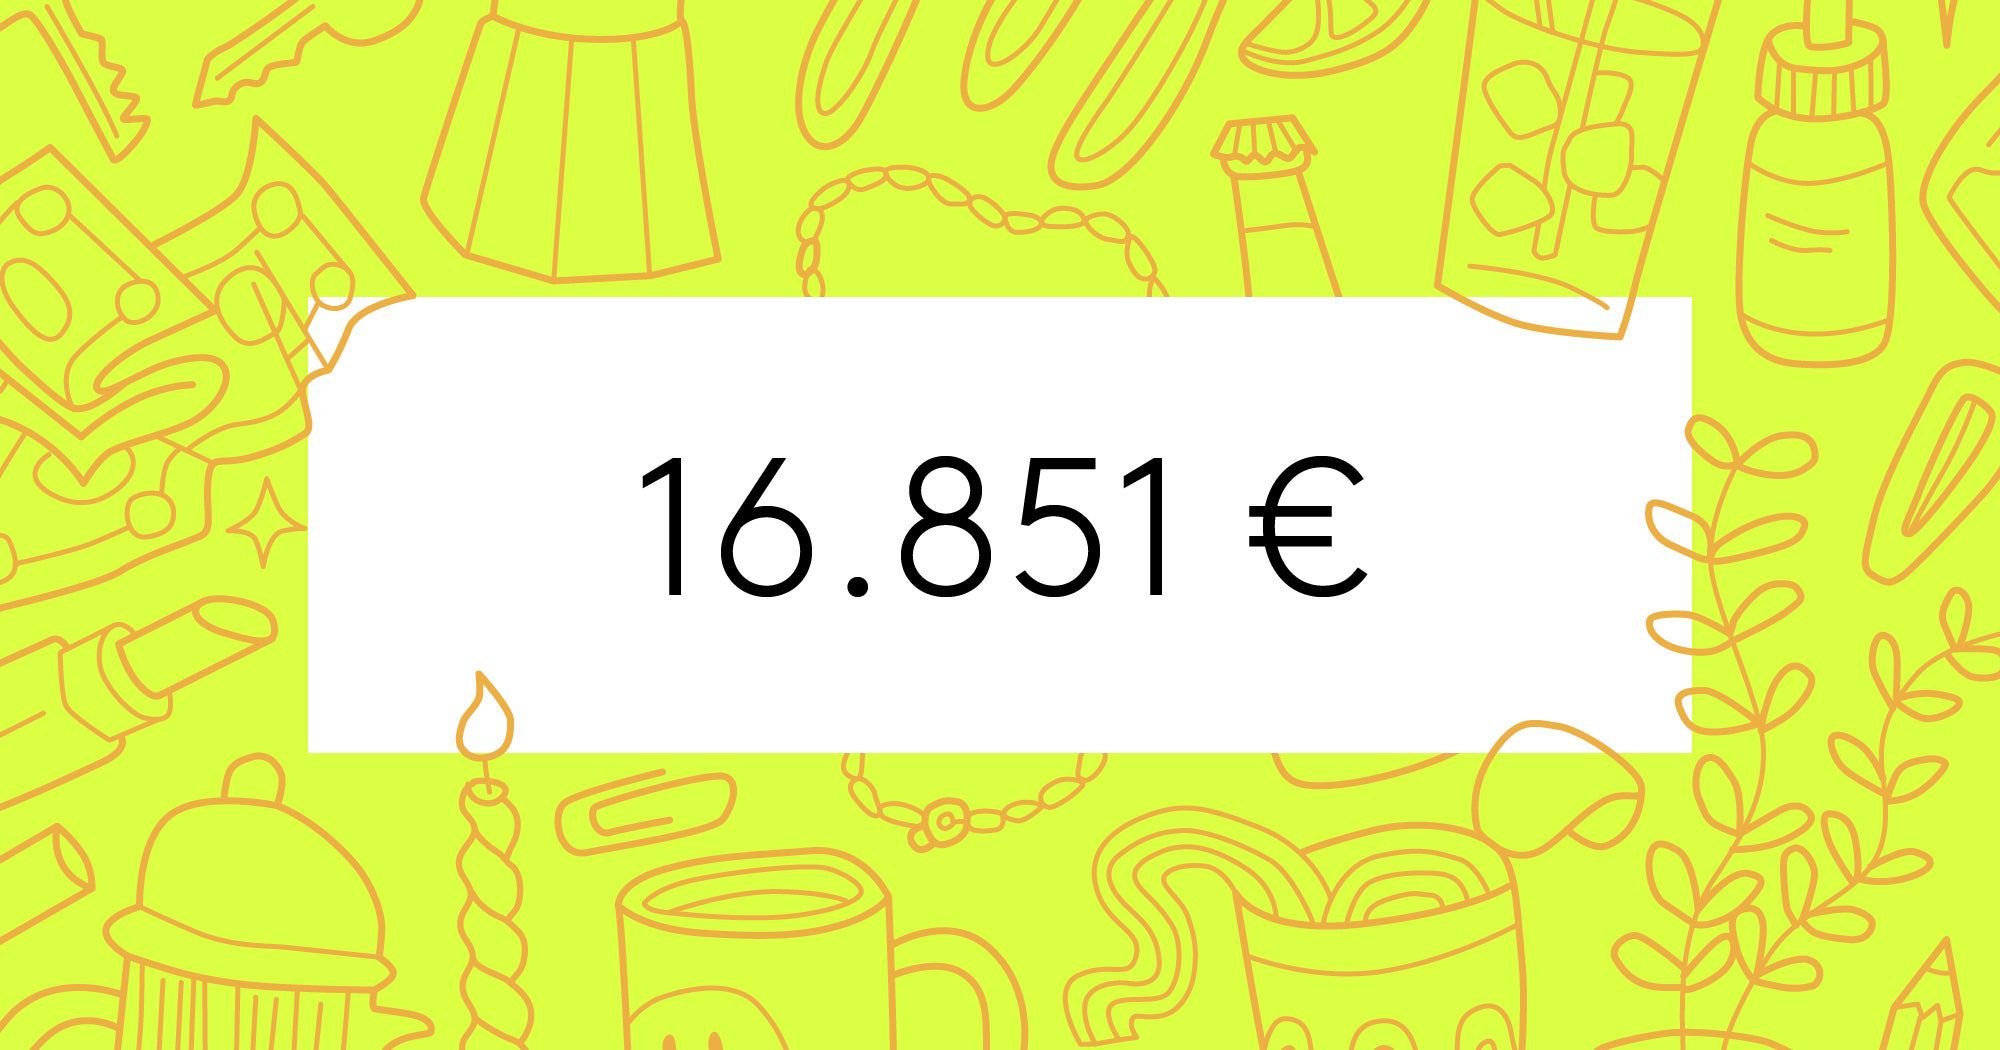 Werkstudentin, 24: So lebt es sich mit 16.851 € Jahresgehalt in Hannover